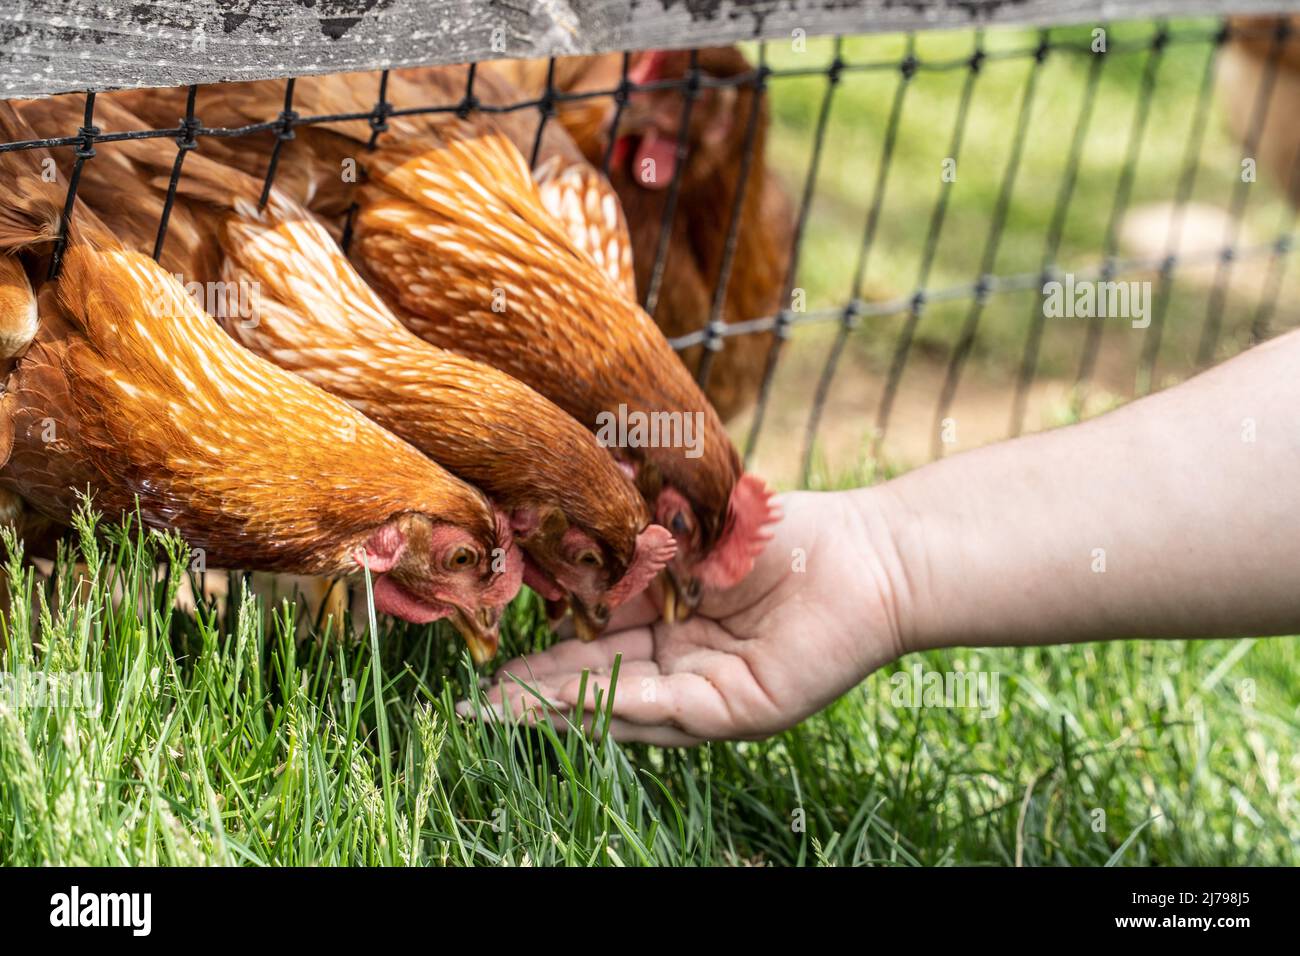 Pollos en granja de aves de corral de libre distribución que se alimentan a mano en el condado de Lancaster, Pensilvania Foto de stock